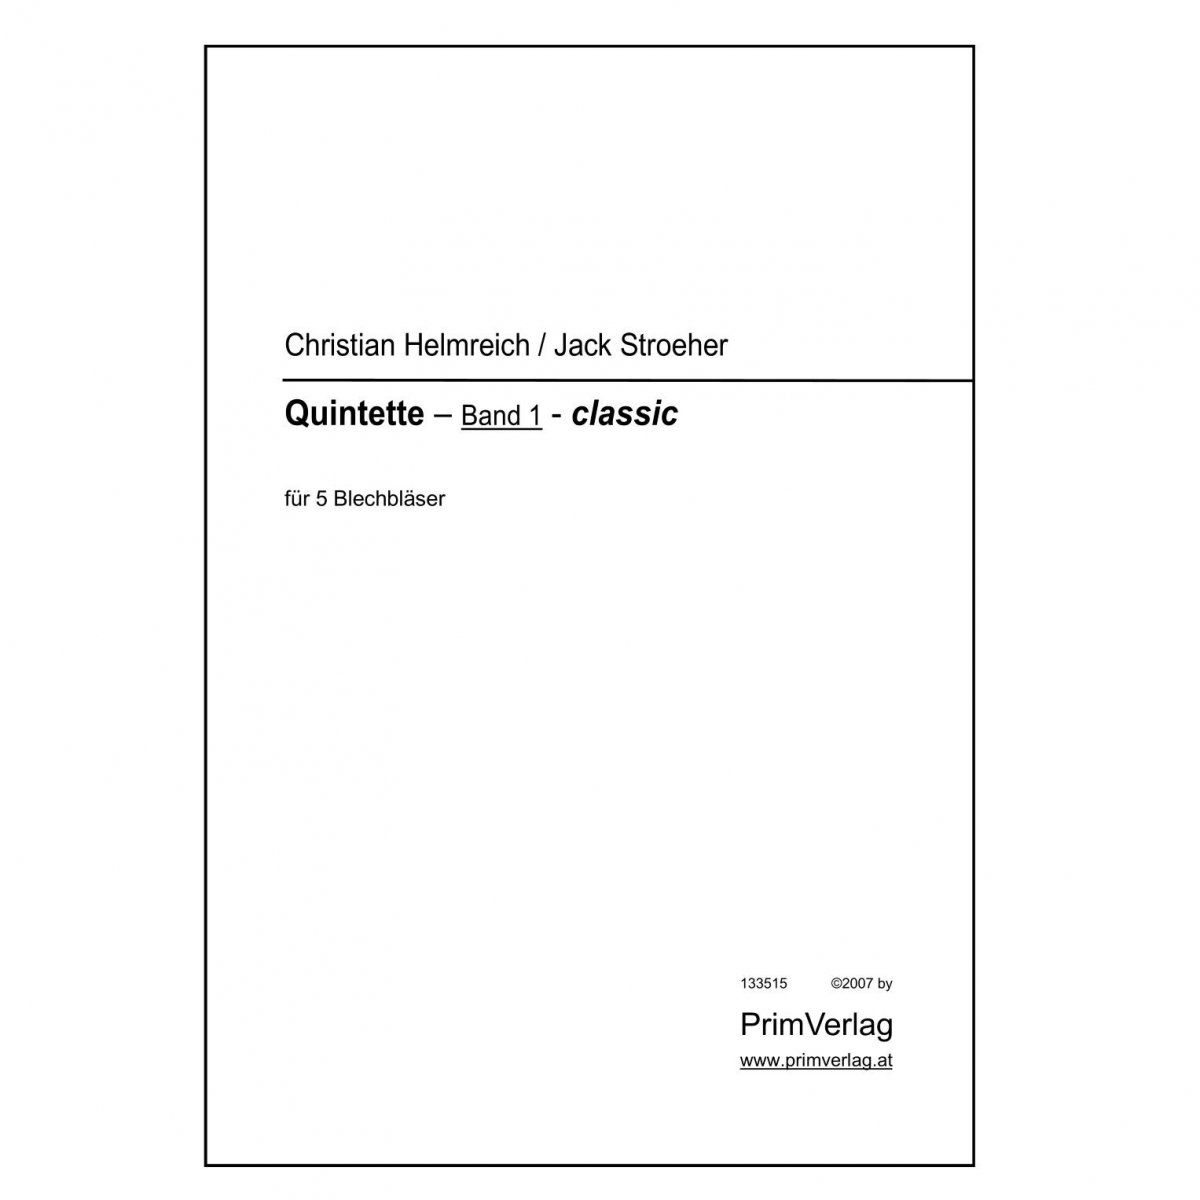 Quintette Band 1 classic - cliccare qui